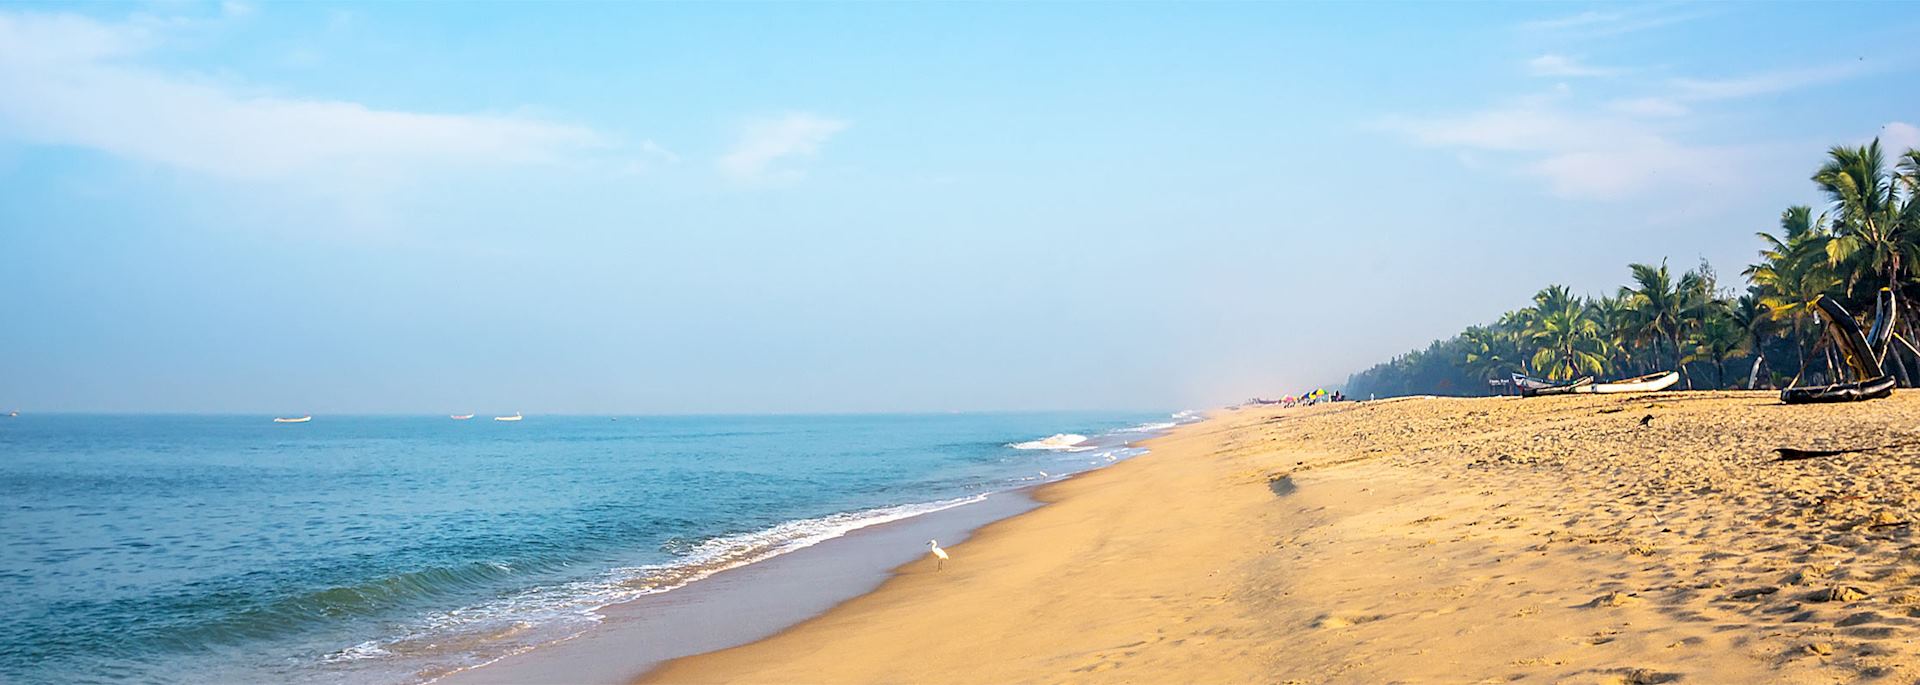 Mararikulam beach